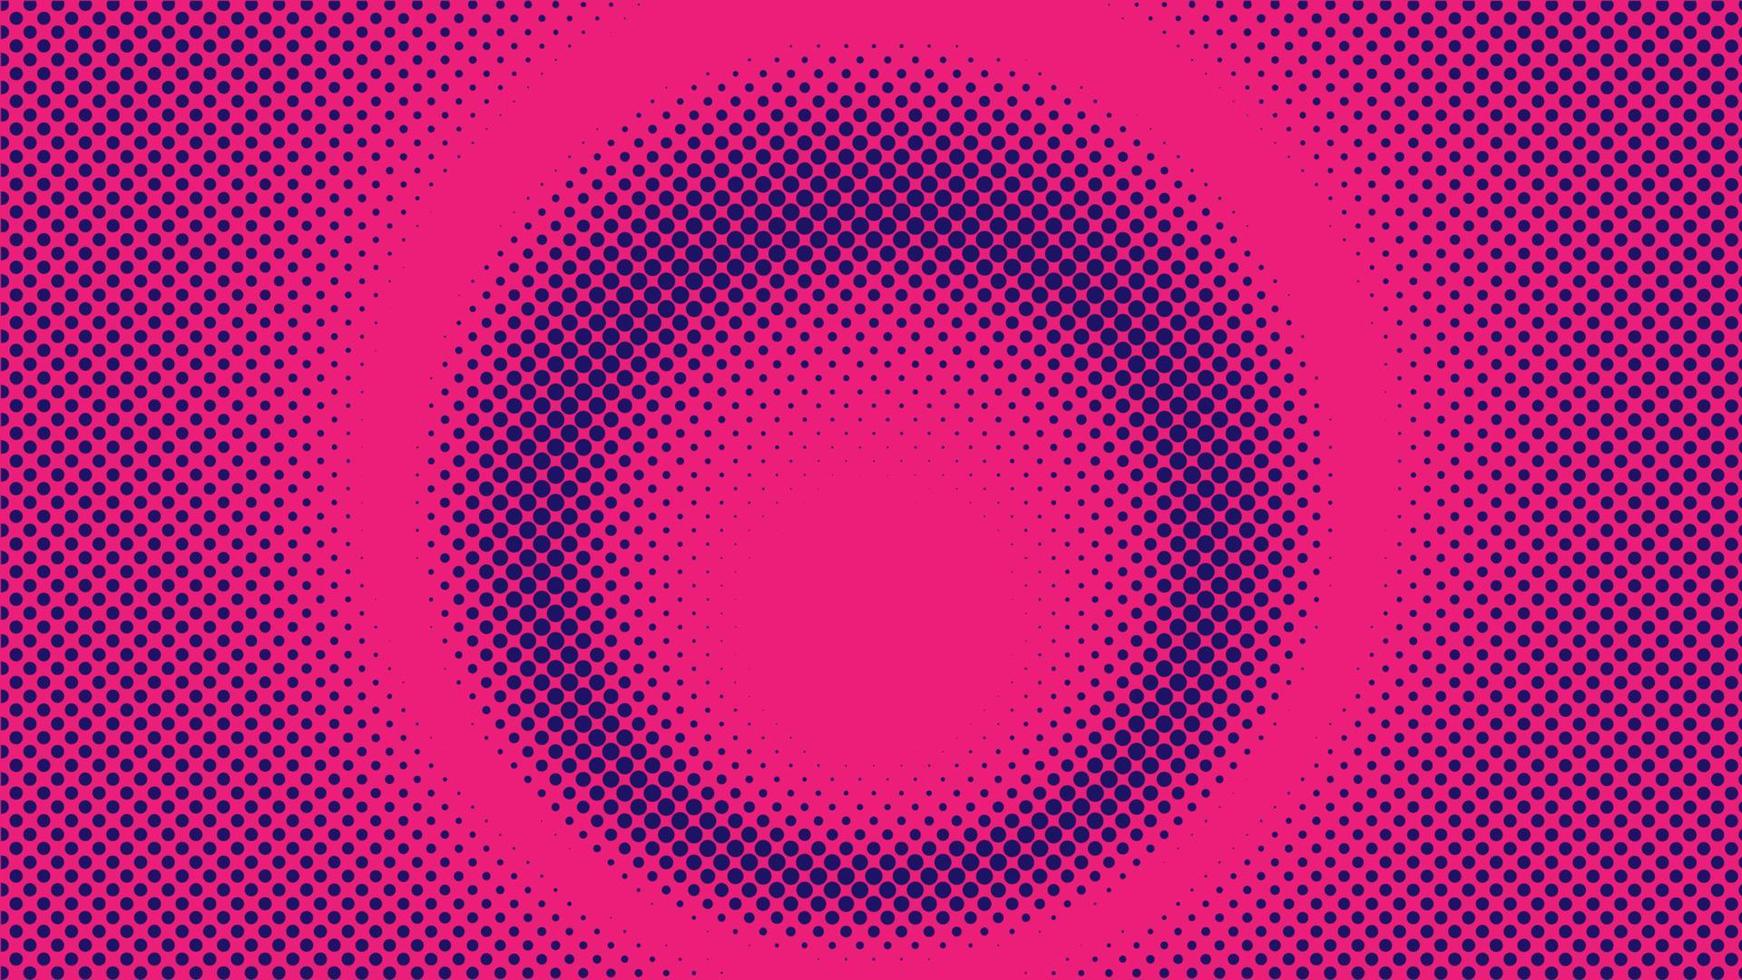 kleurrijke radiale halftone achtergrond ontwerpsjabloon, popart, abstracte stippen patroon illustratie, moderne textuur element, ring halftone ornament, roze magenta violet paars gradatie behang vector